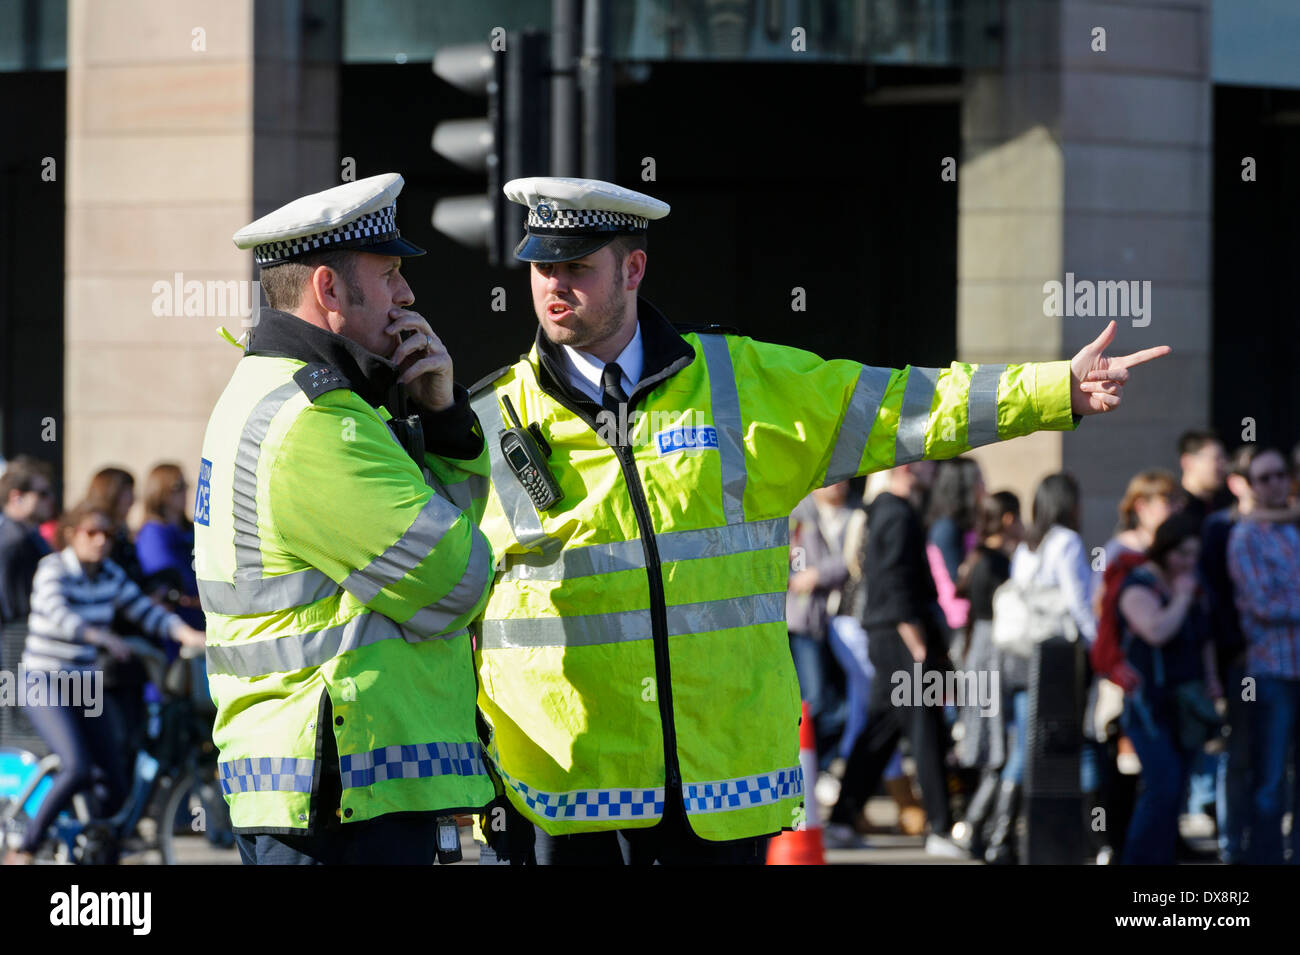 Deux agents de police de la circulation métropolitaine uniforme parle d'une situation, Londres, Angleterre, Royaume-Uni. Banque D'Images